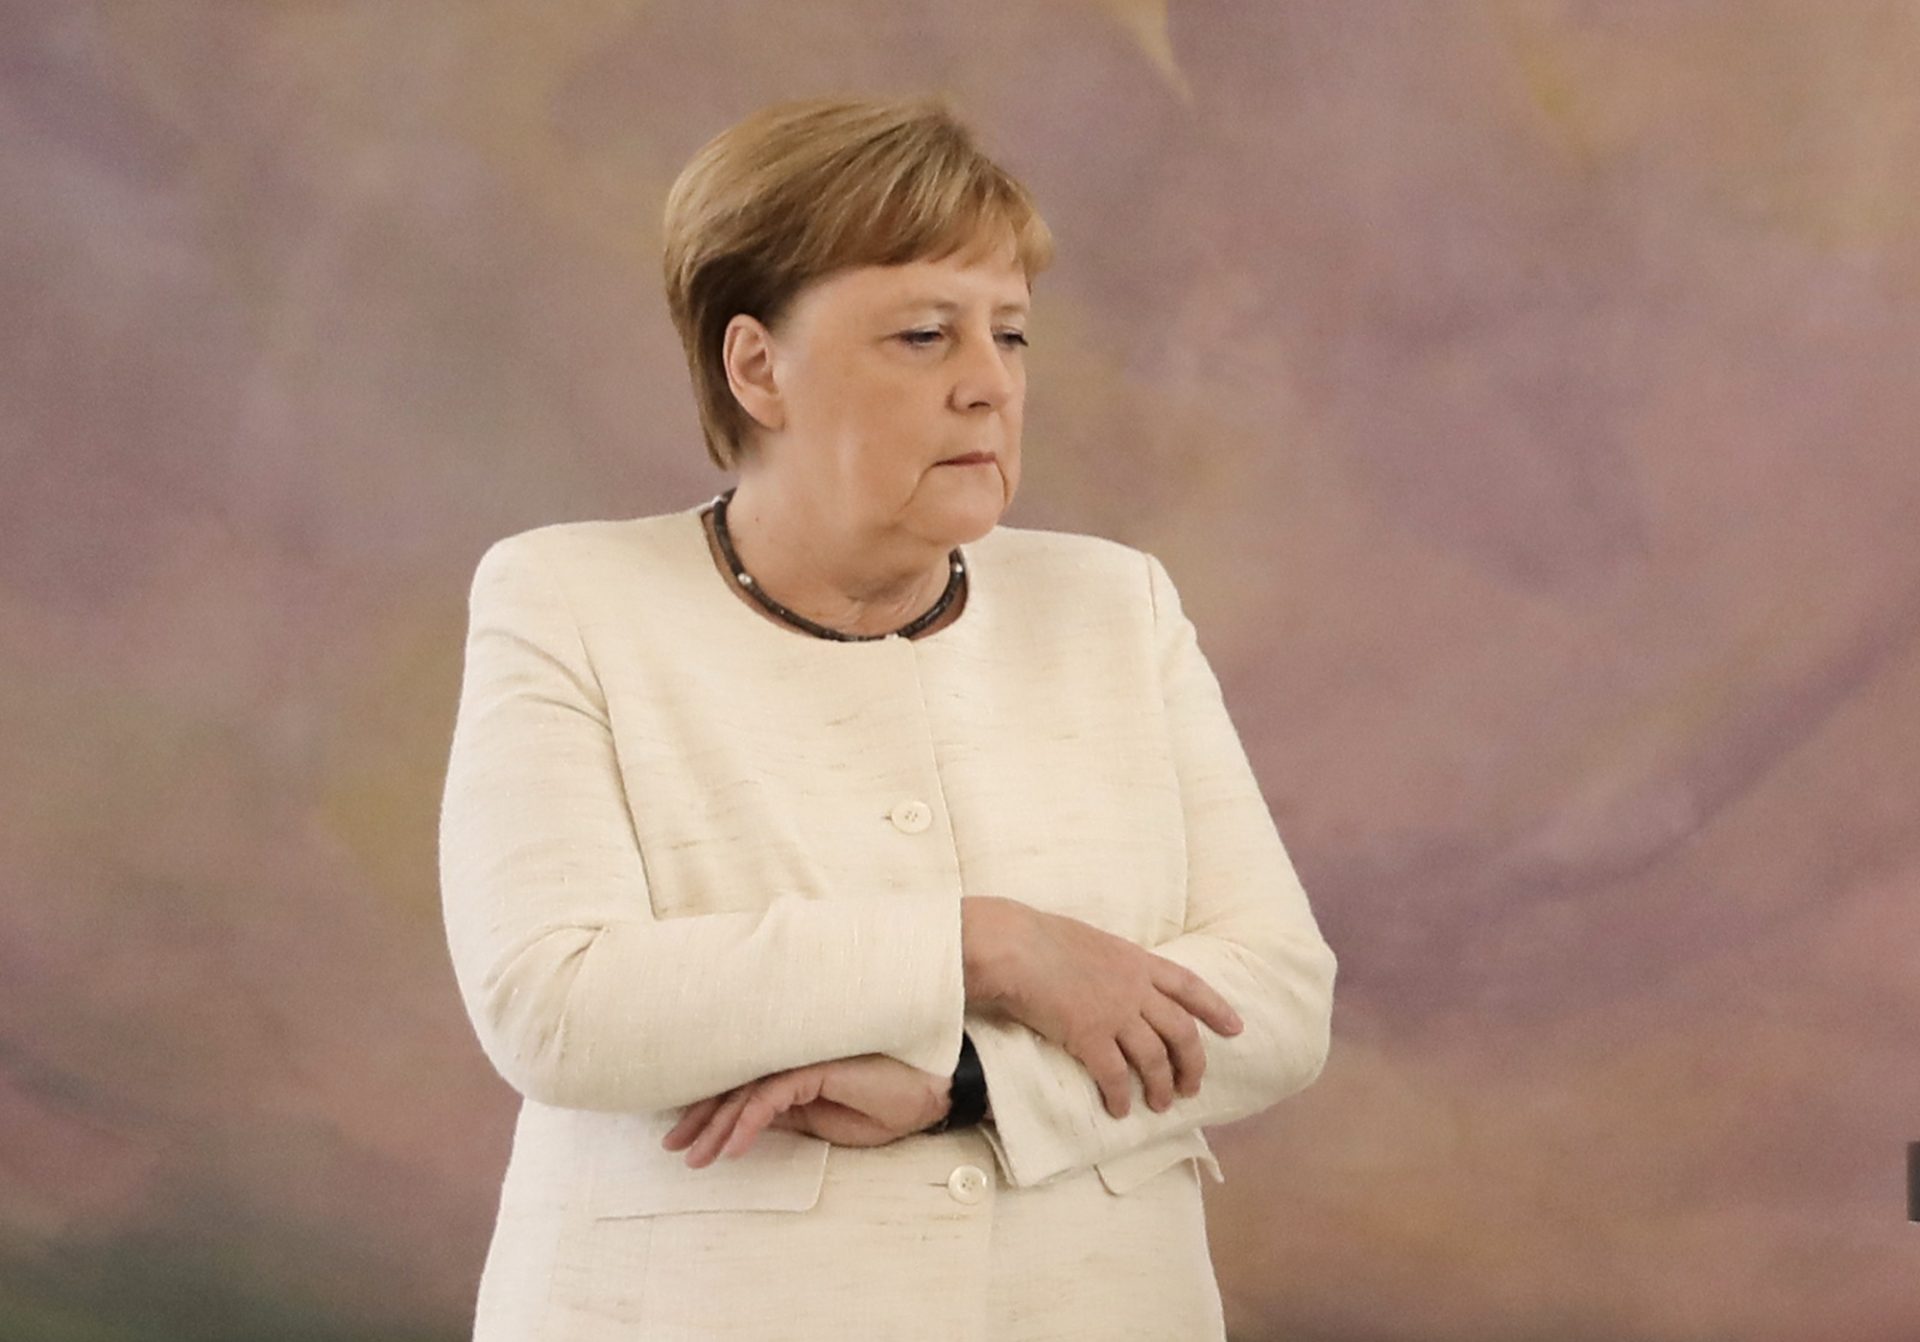 Angela Merkel volta a ter ataque de tremores em público | VÍDEO